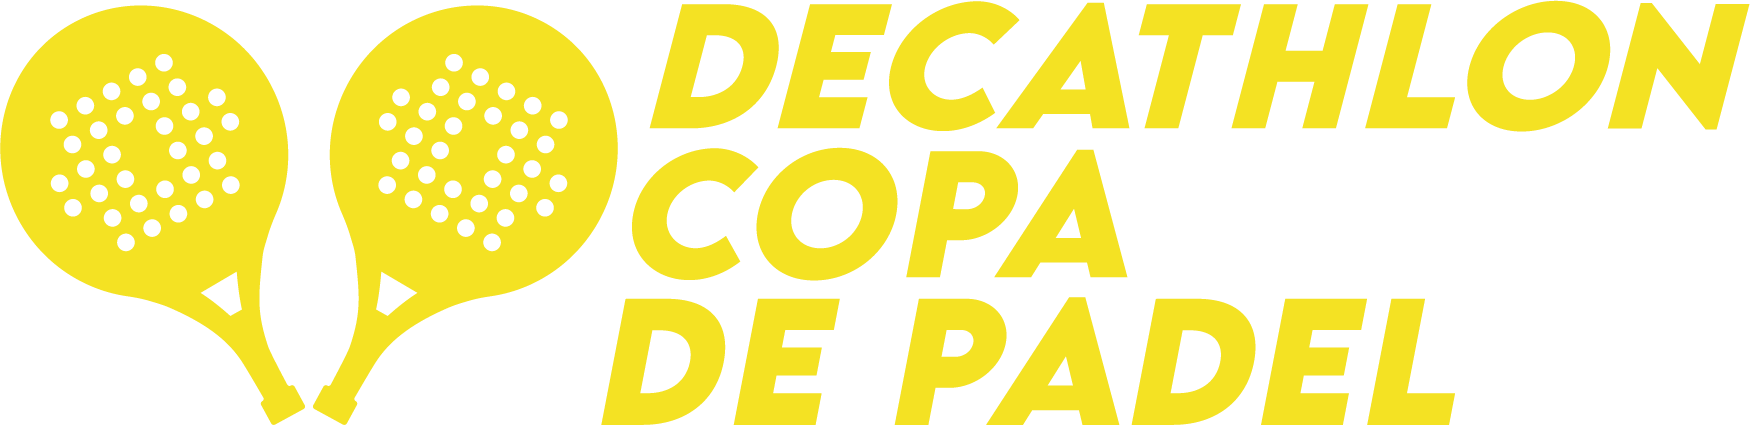 Decathlon Copa De Padel